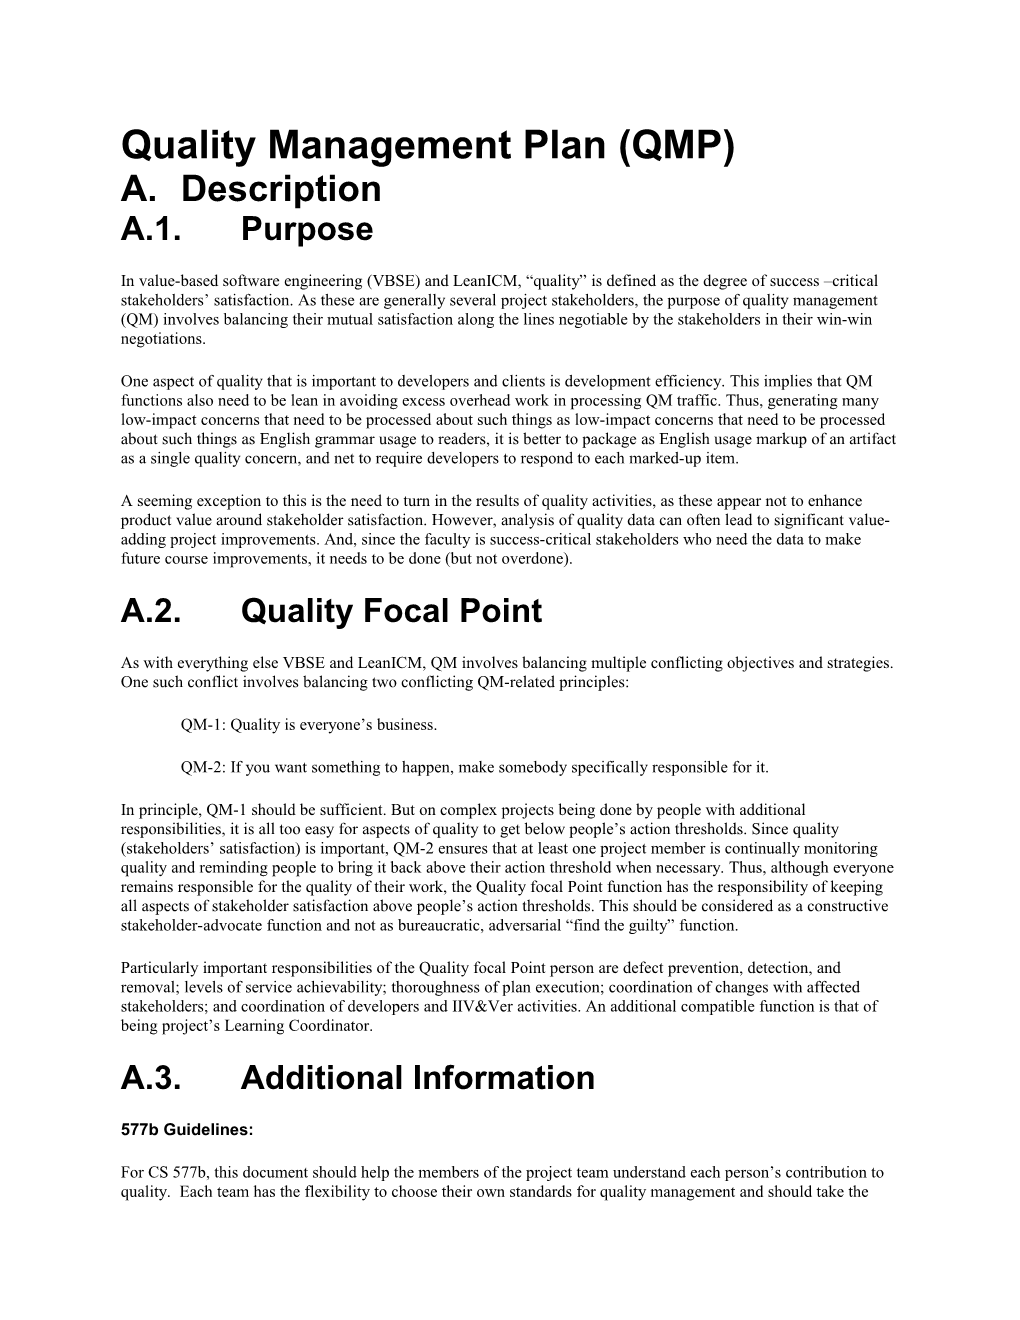 Quality Management Plan (QMP) s1